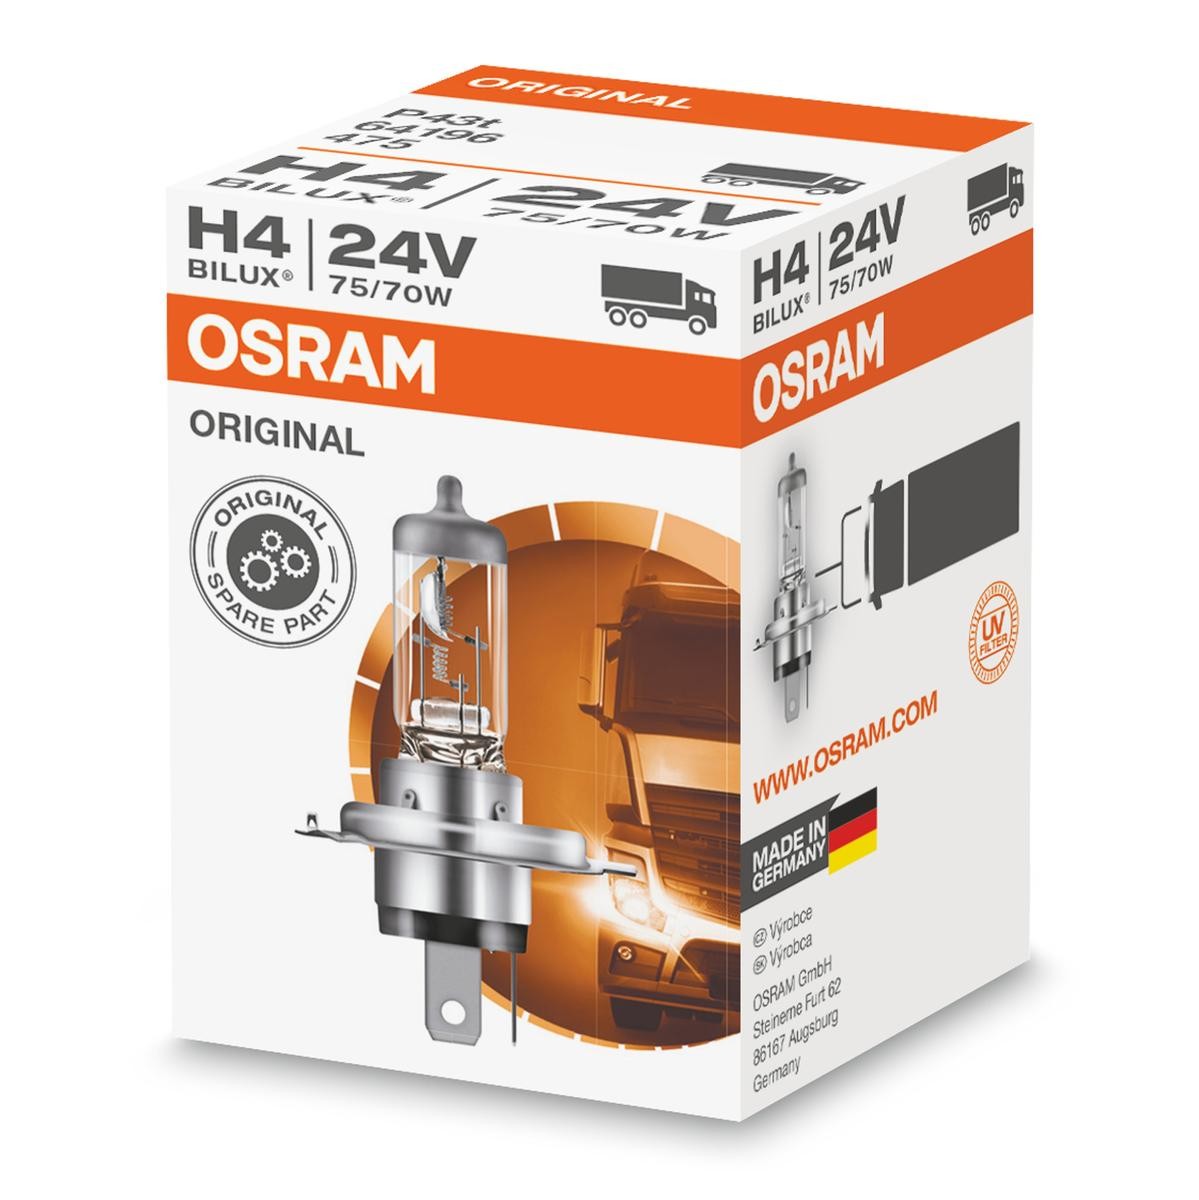 H4 OSRAM ORIGINAL H4 24V 75/70W3200K Halogen Glühlampe, Fernscheinwerfer 64196 günstig kaufen